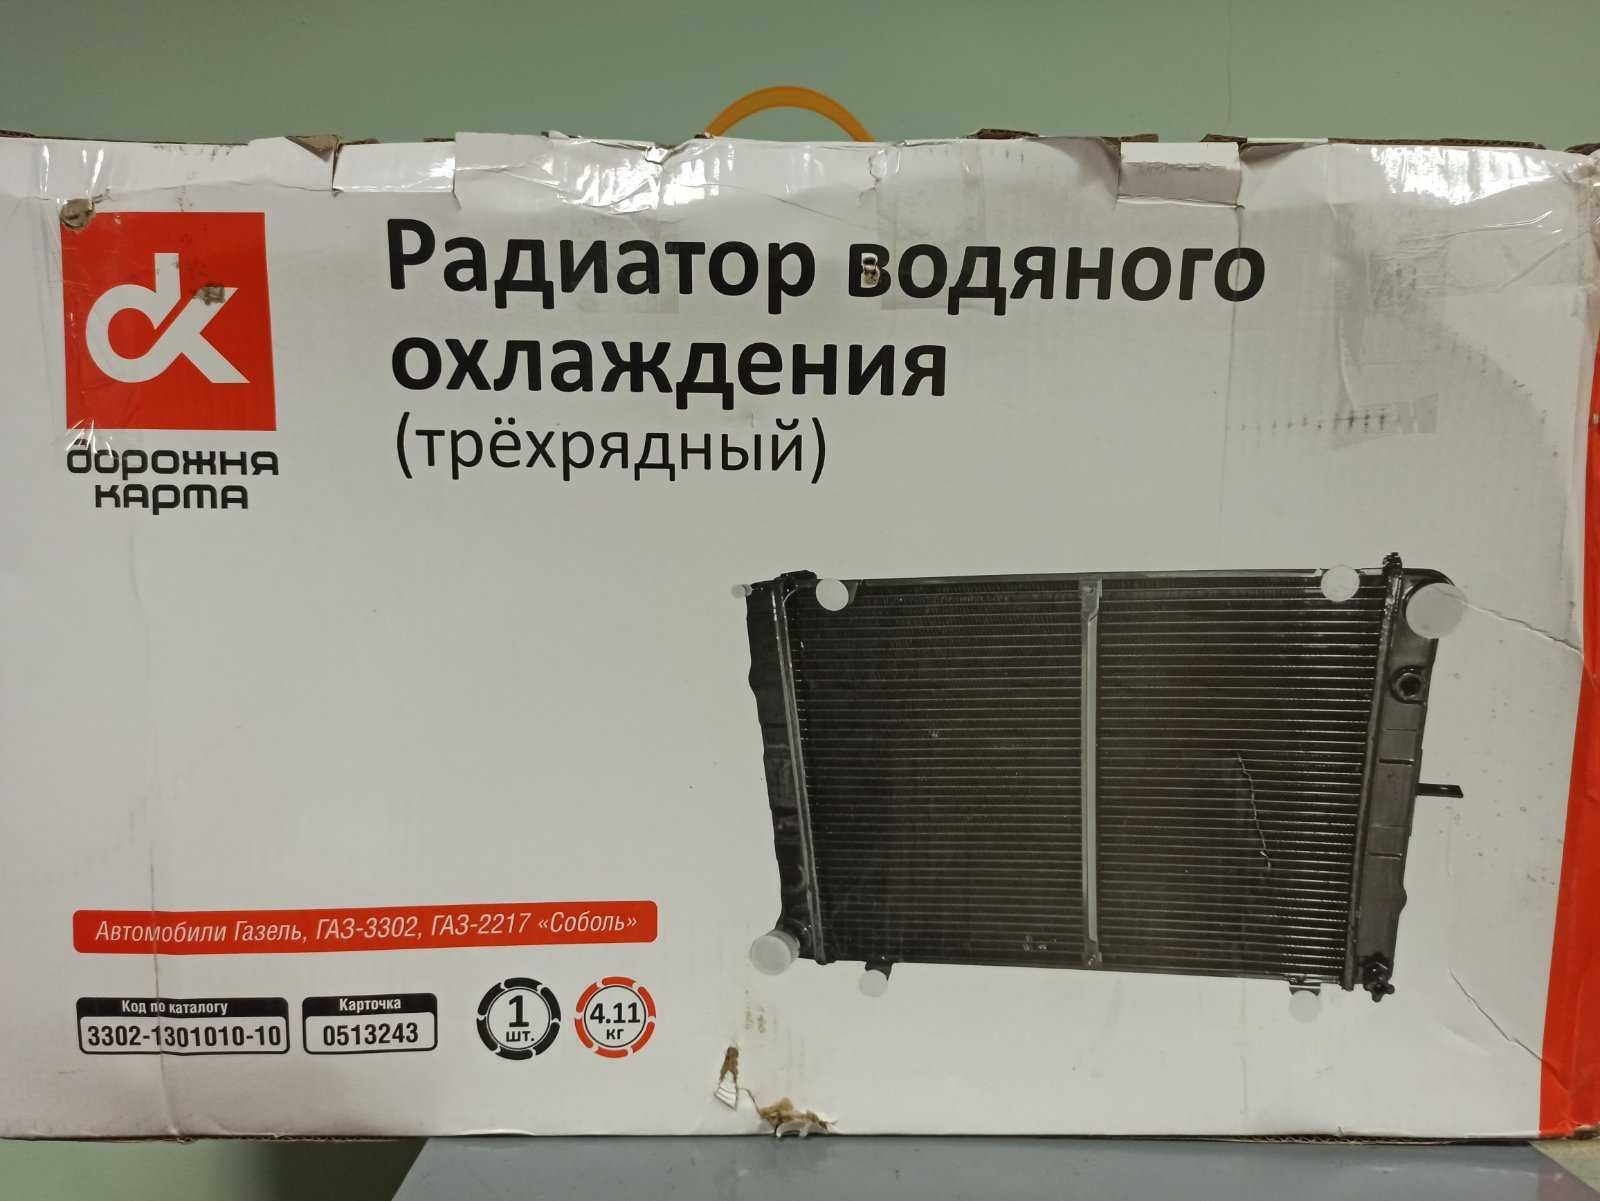 Радиатор водяного охлаждения (трехрядный)  ГАЗ-3302